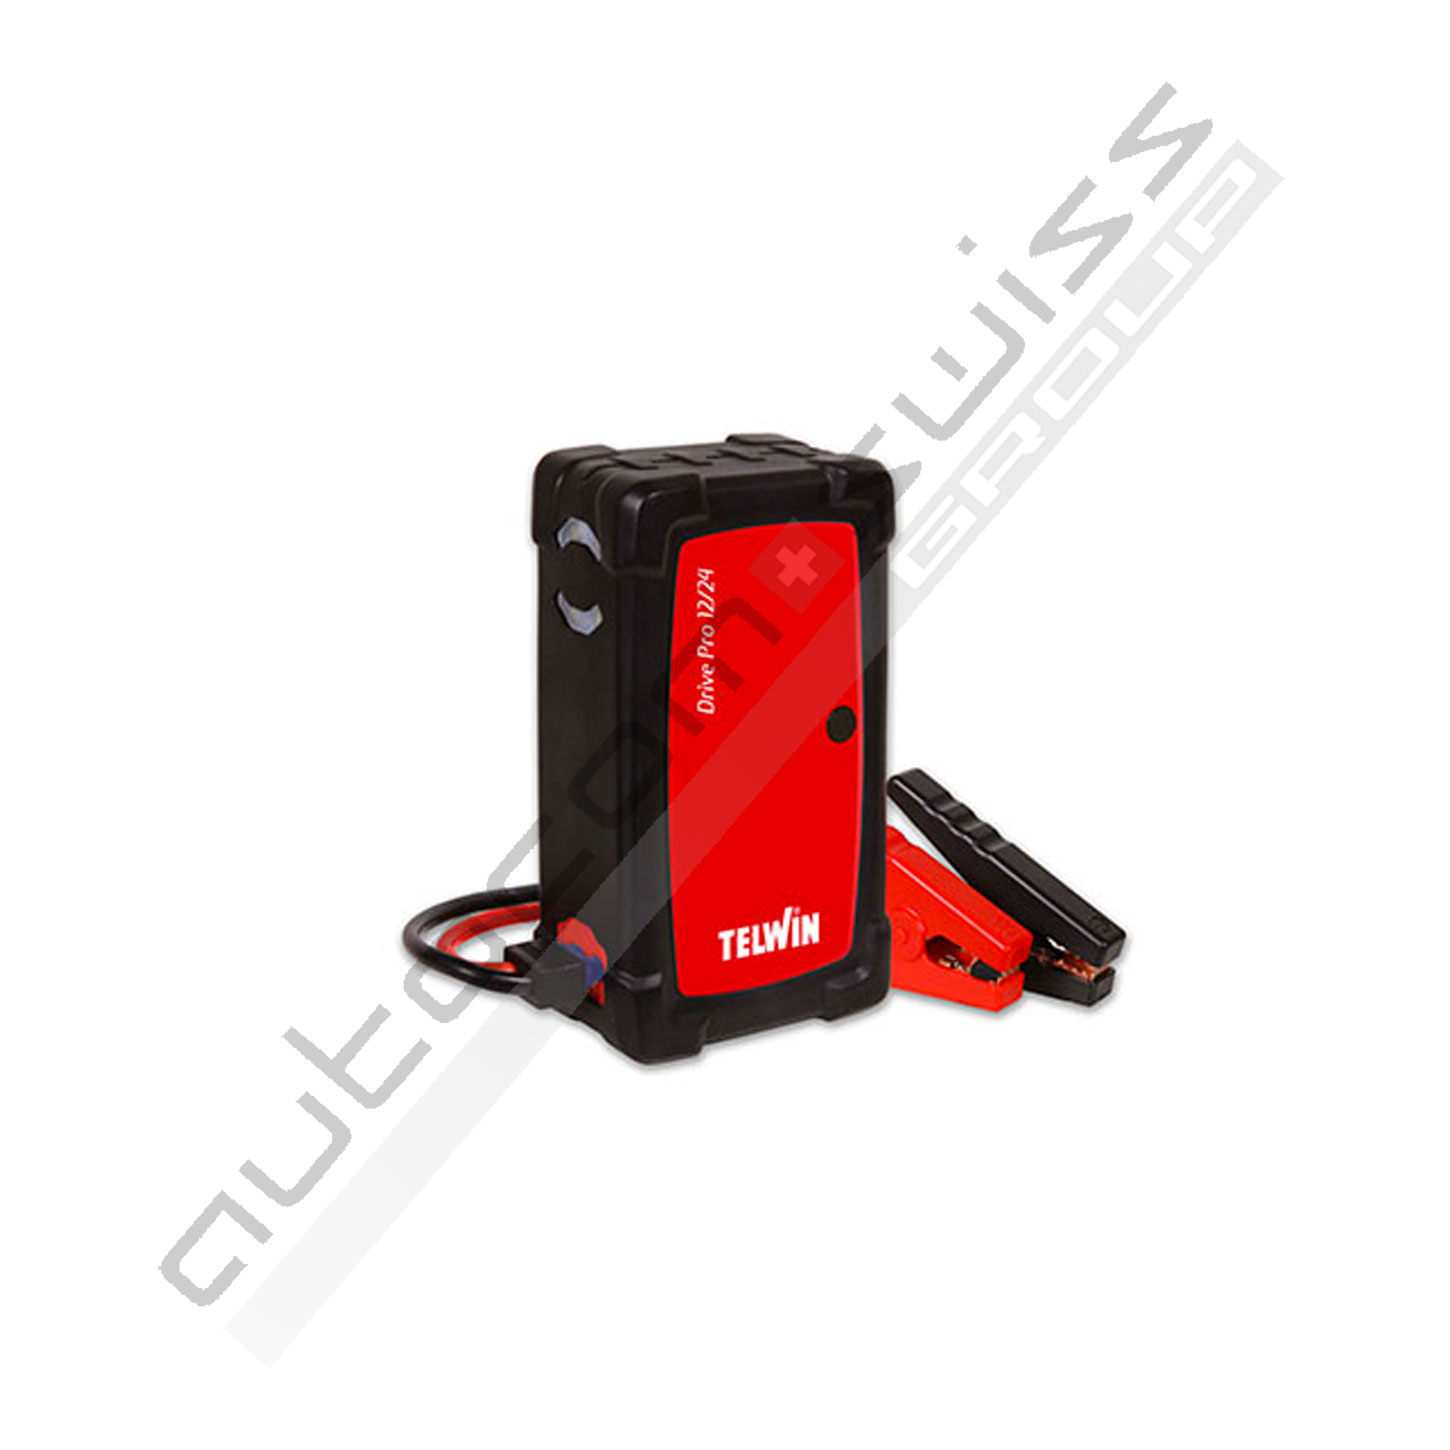 Telwin Drive Pro 12/24 Démarreur multifonction au lithium à 12-24V